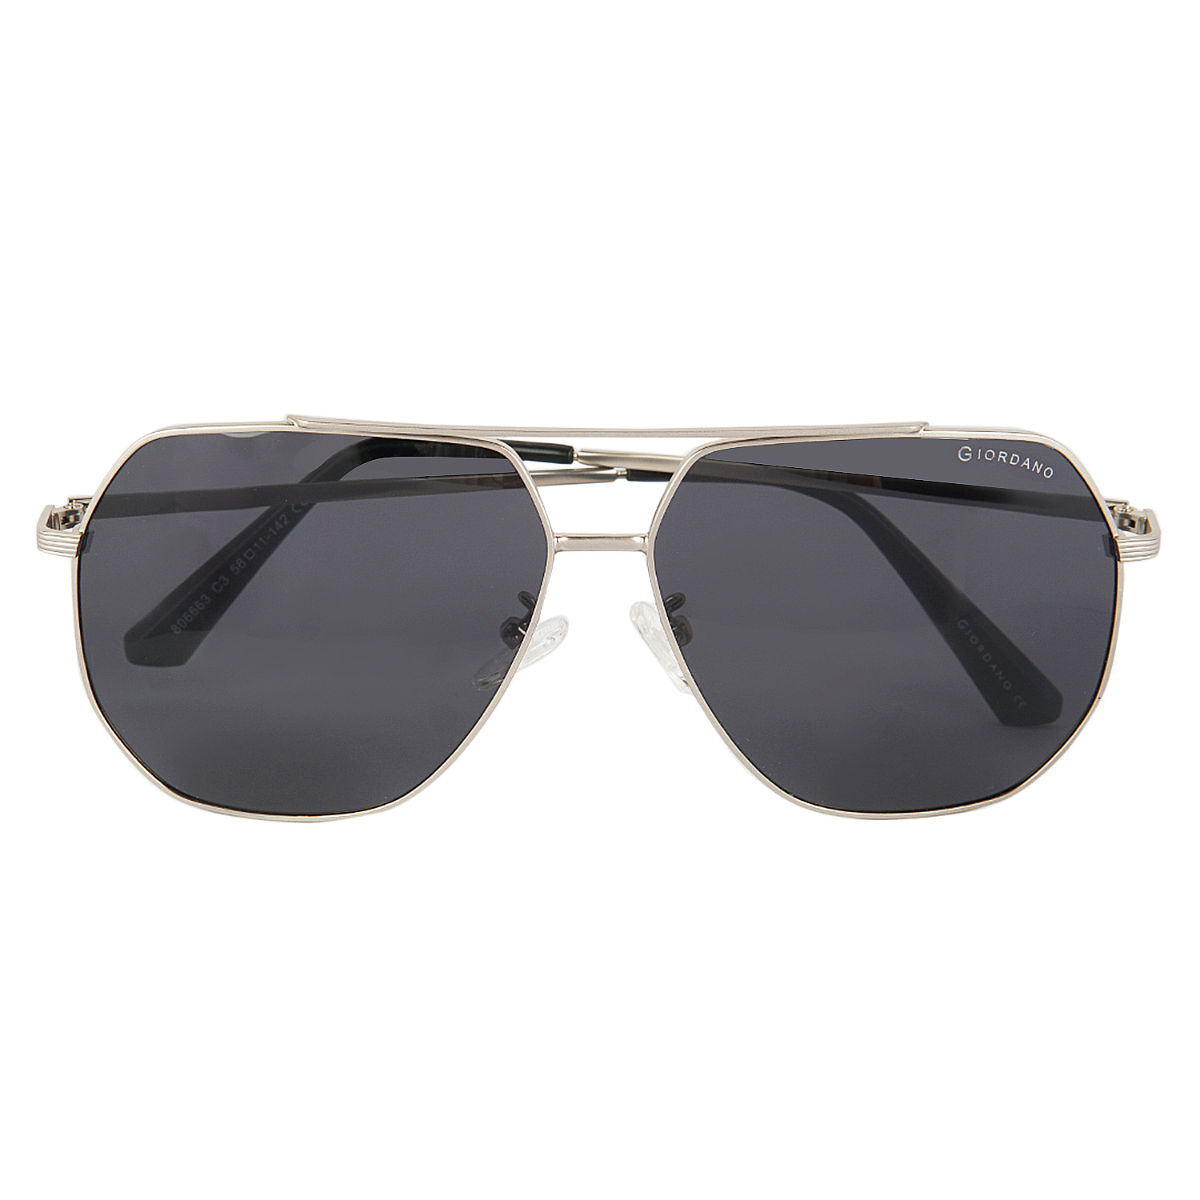 Buy GIORDANO Oval Sunglasses Brown For Men & Women Online @ Best Prices in  India | Flipkart.com